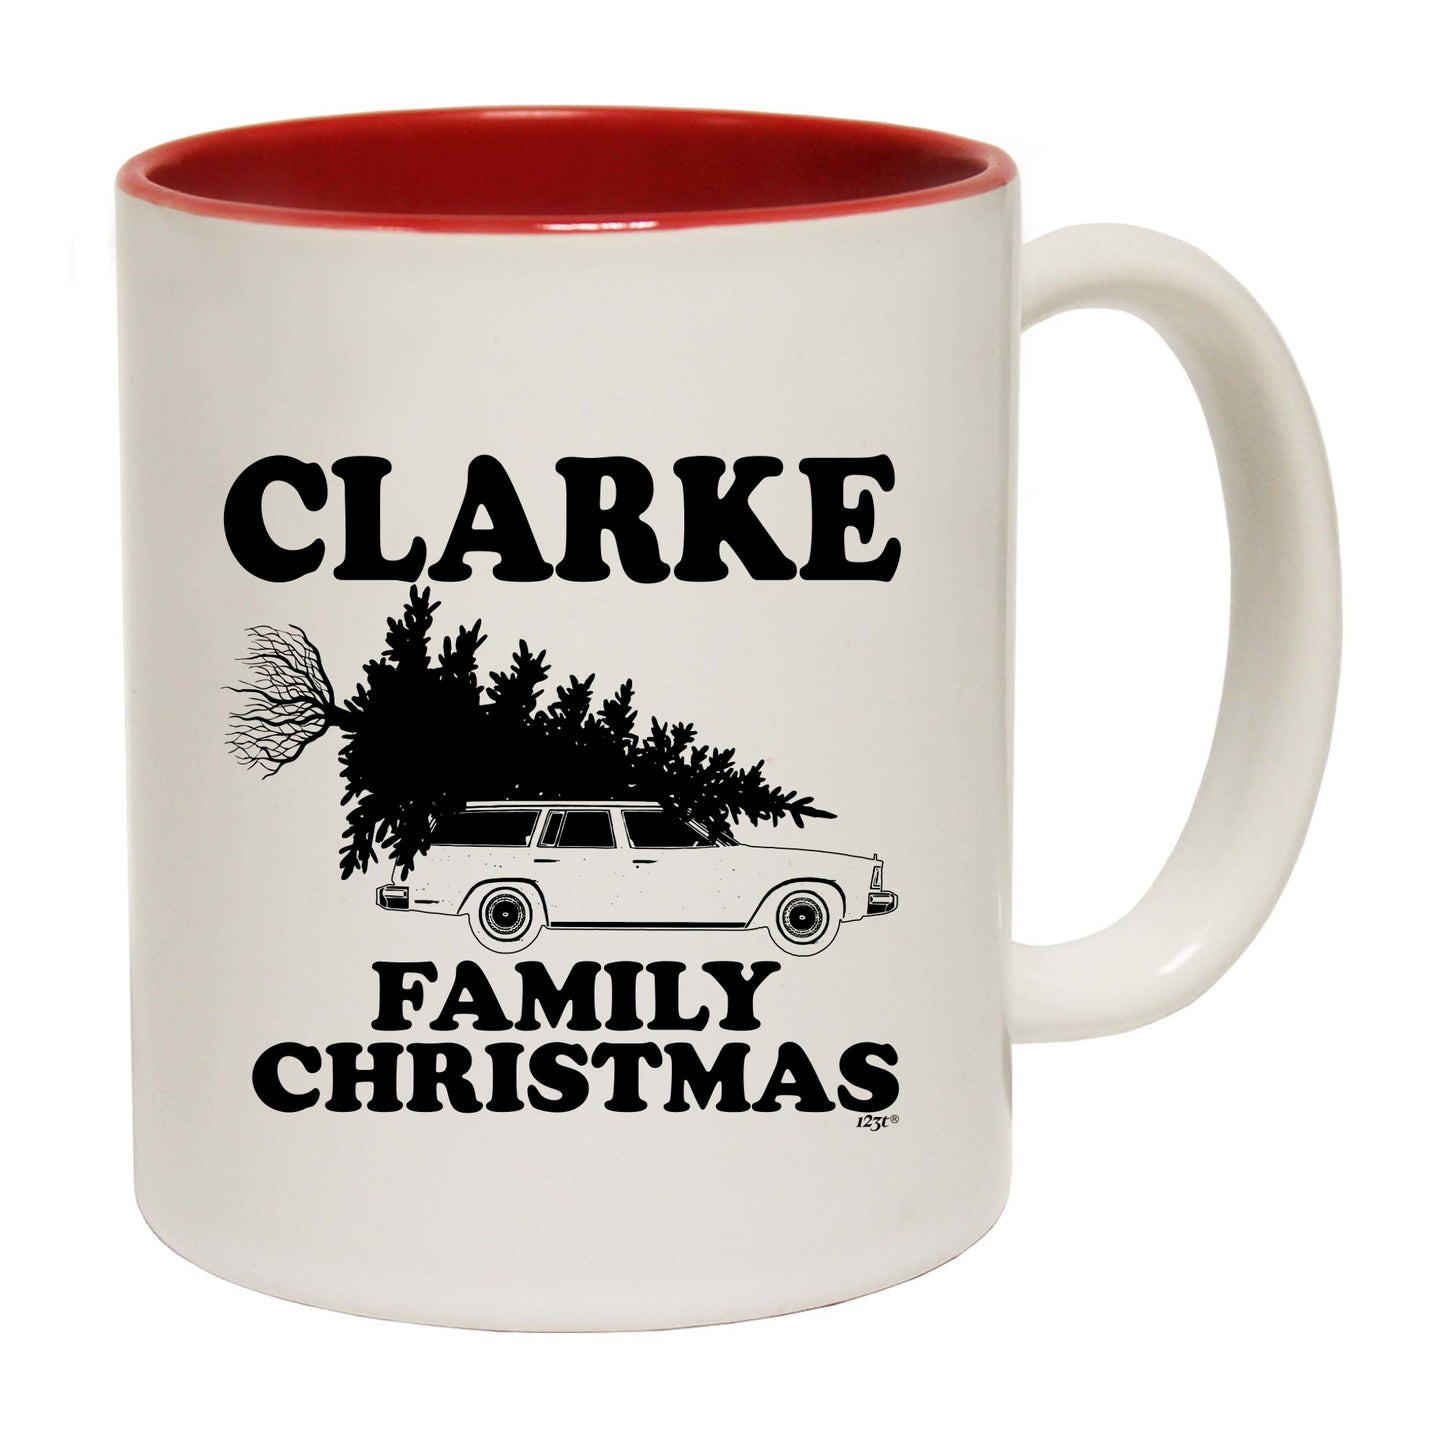 The Christmas Hub - Family Christmas Clarke - Funny Coffee Mug